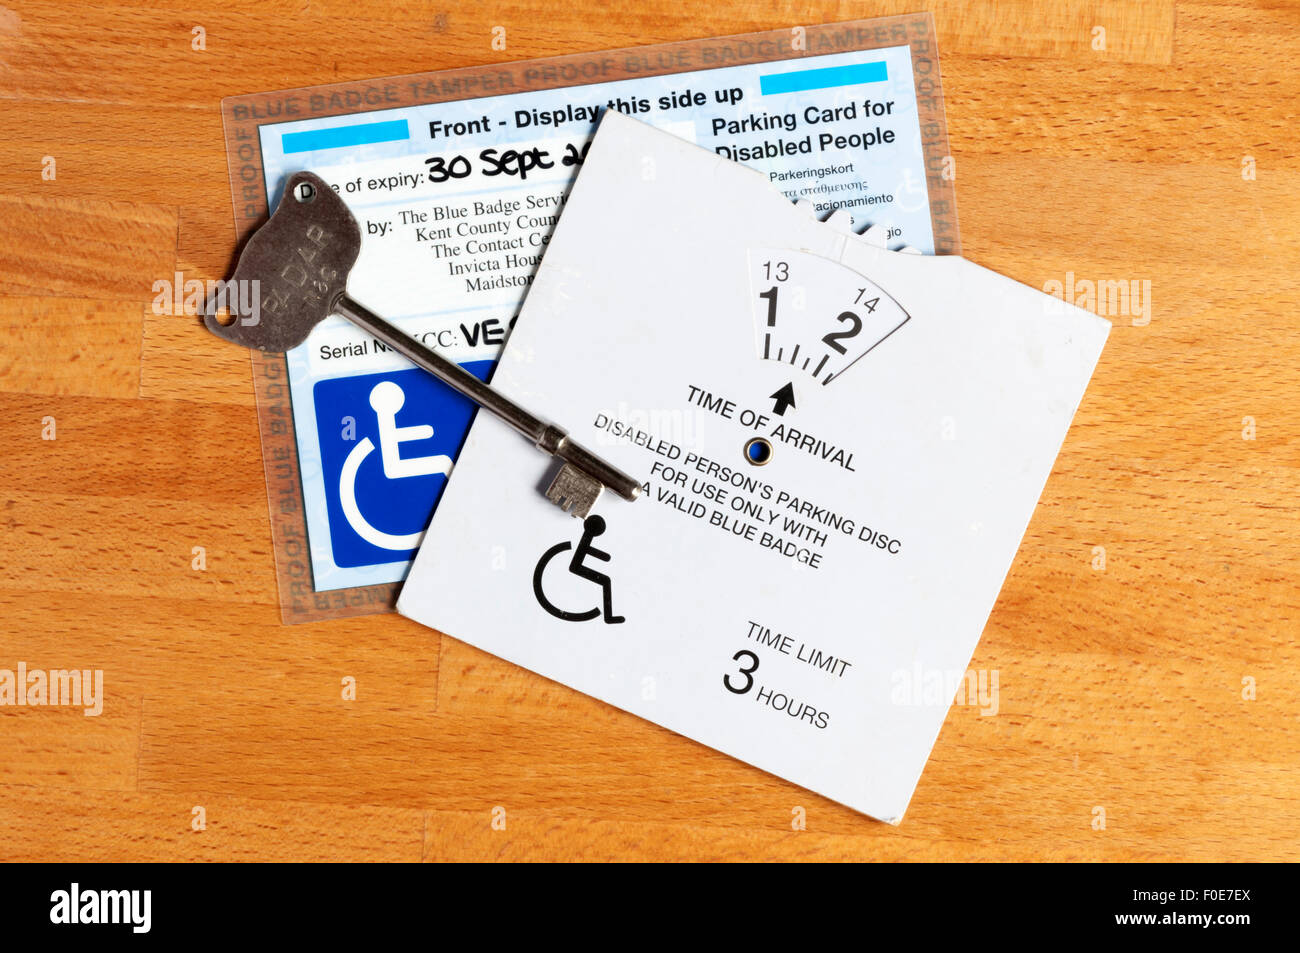 Eine behinderte Person Scheibe & blauen Parkausweis Nutzung von Behindertenparkplätzen und Radar-Schlüssel für Behindertentoiletten öffnen zu ermöglichen. Stockfoto